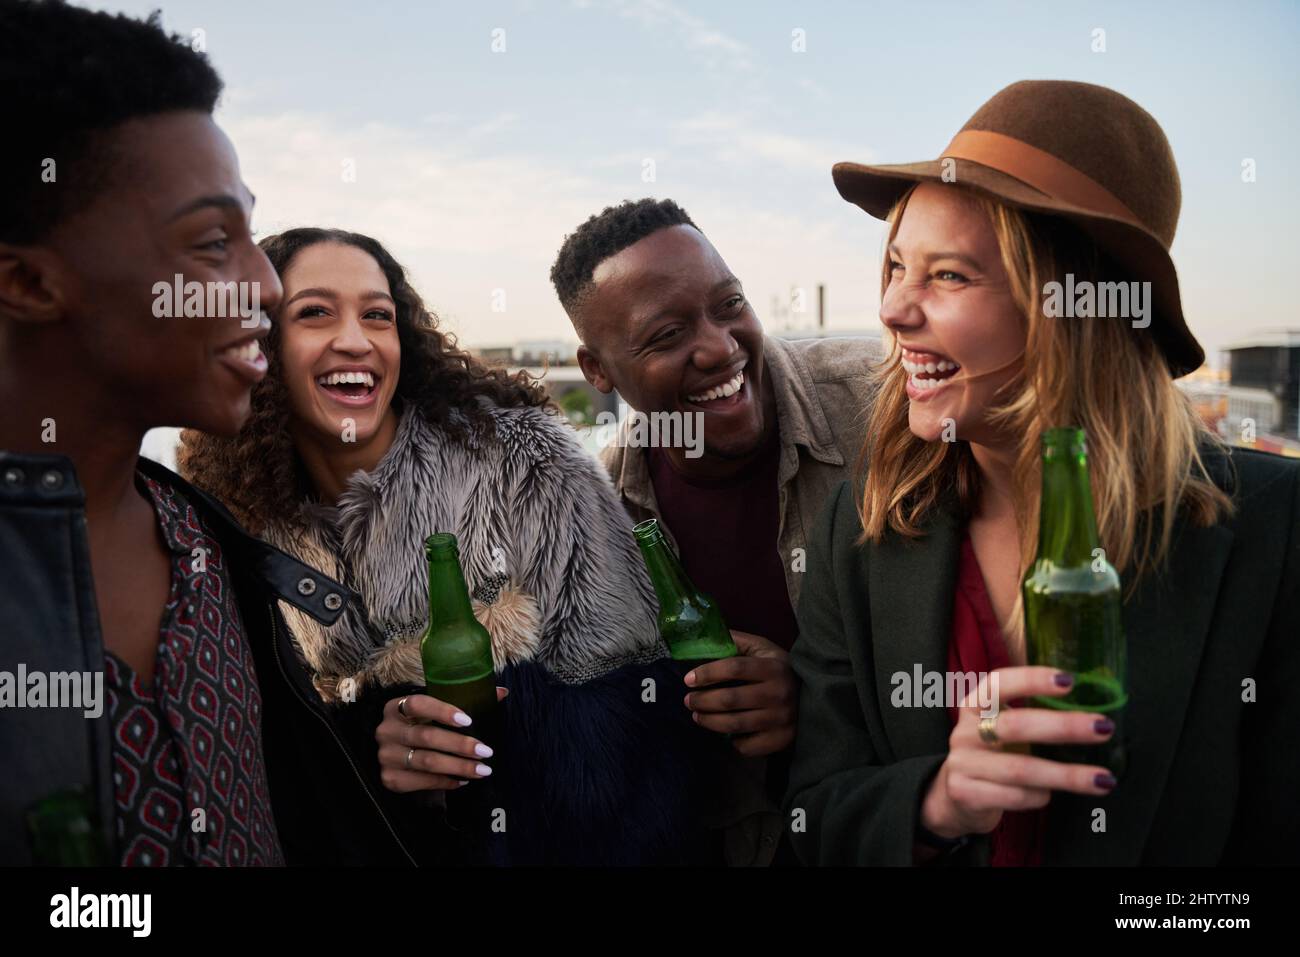 Un groupe de jeunes adultes multiculturels qui se moque ensemble sur un toit-terrasse de la ville. Boissons à la main, sourires entre amis. Banque D'Images